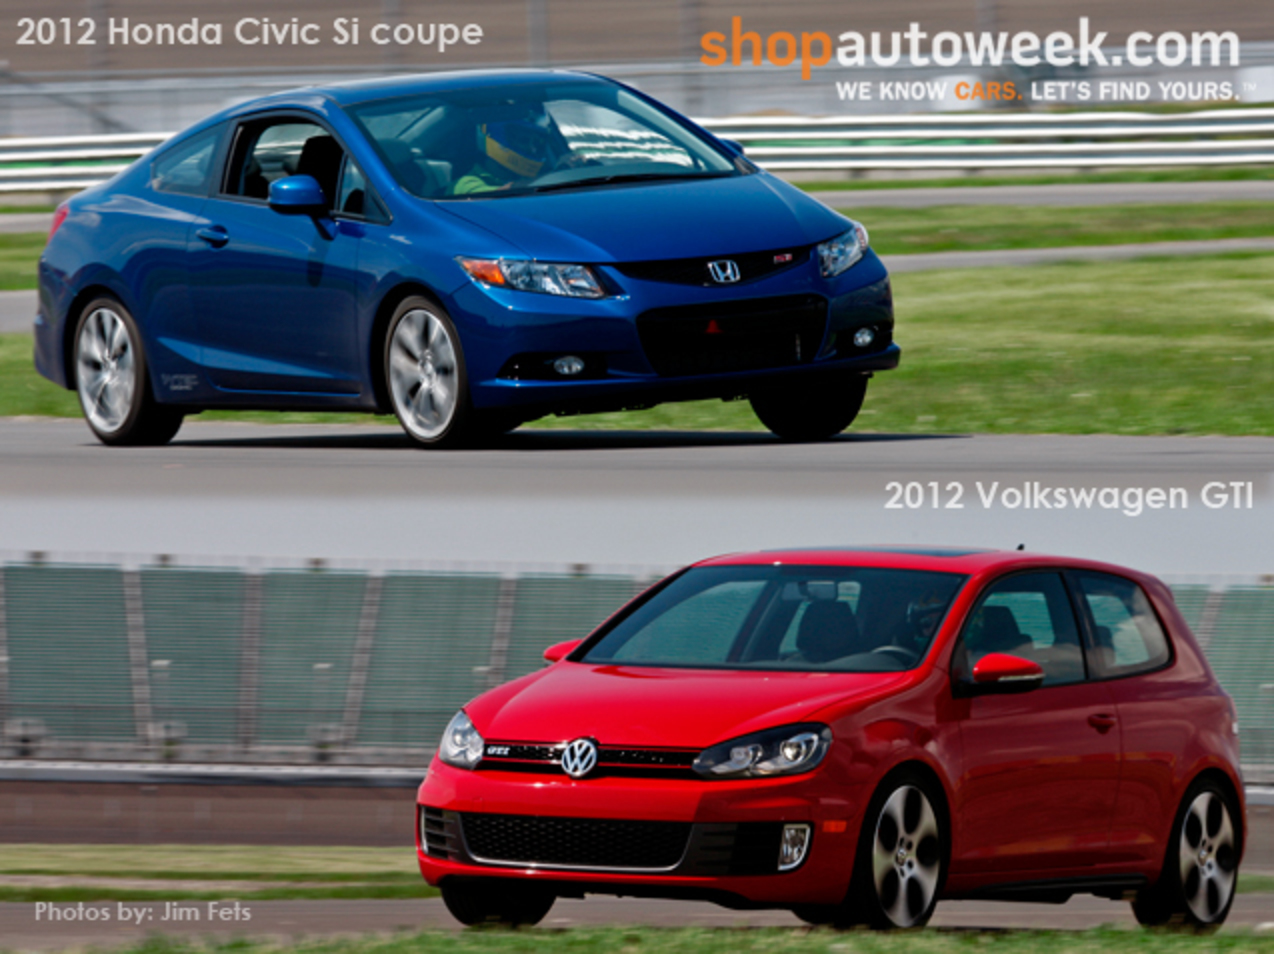 Honda Civic Si coupe vs. Volkswagen GTI comparison test